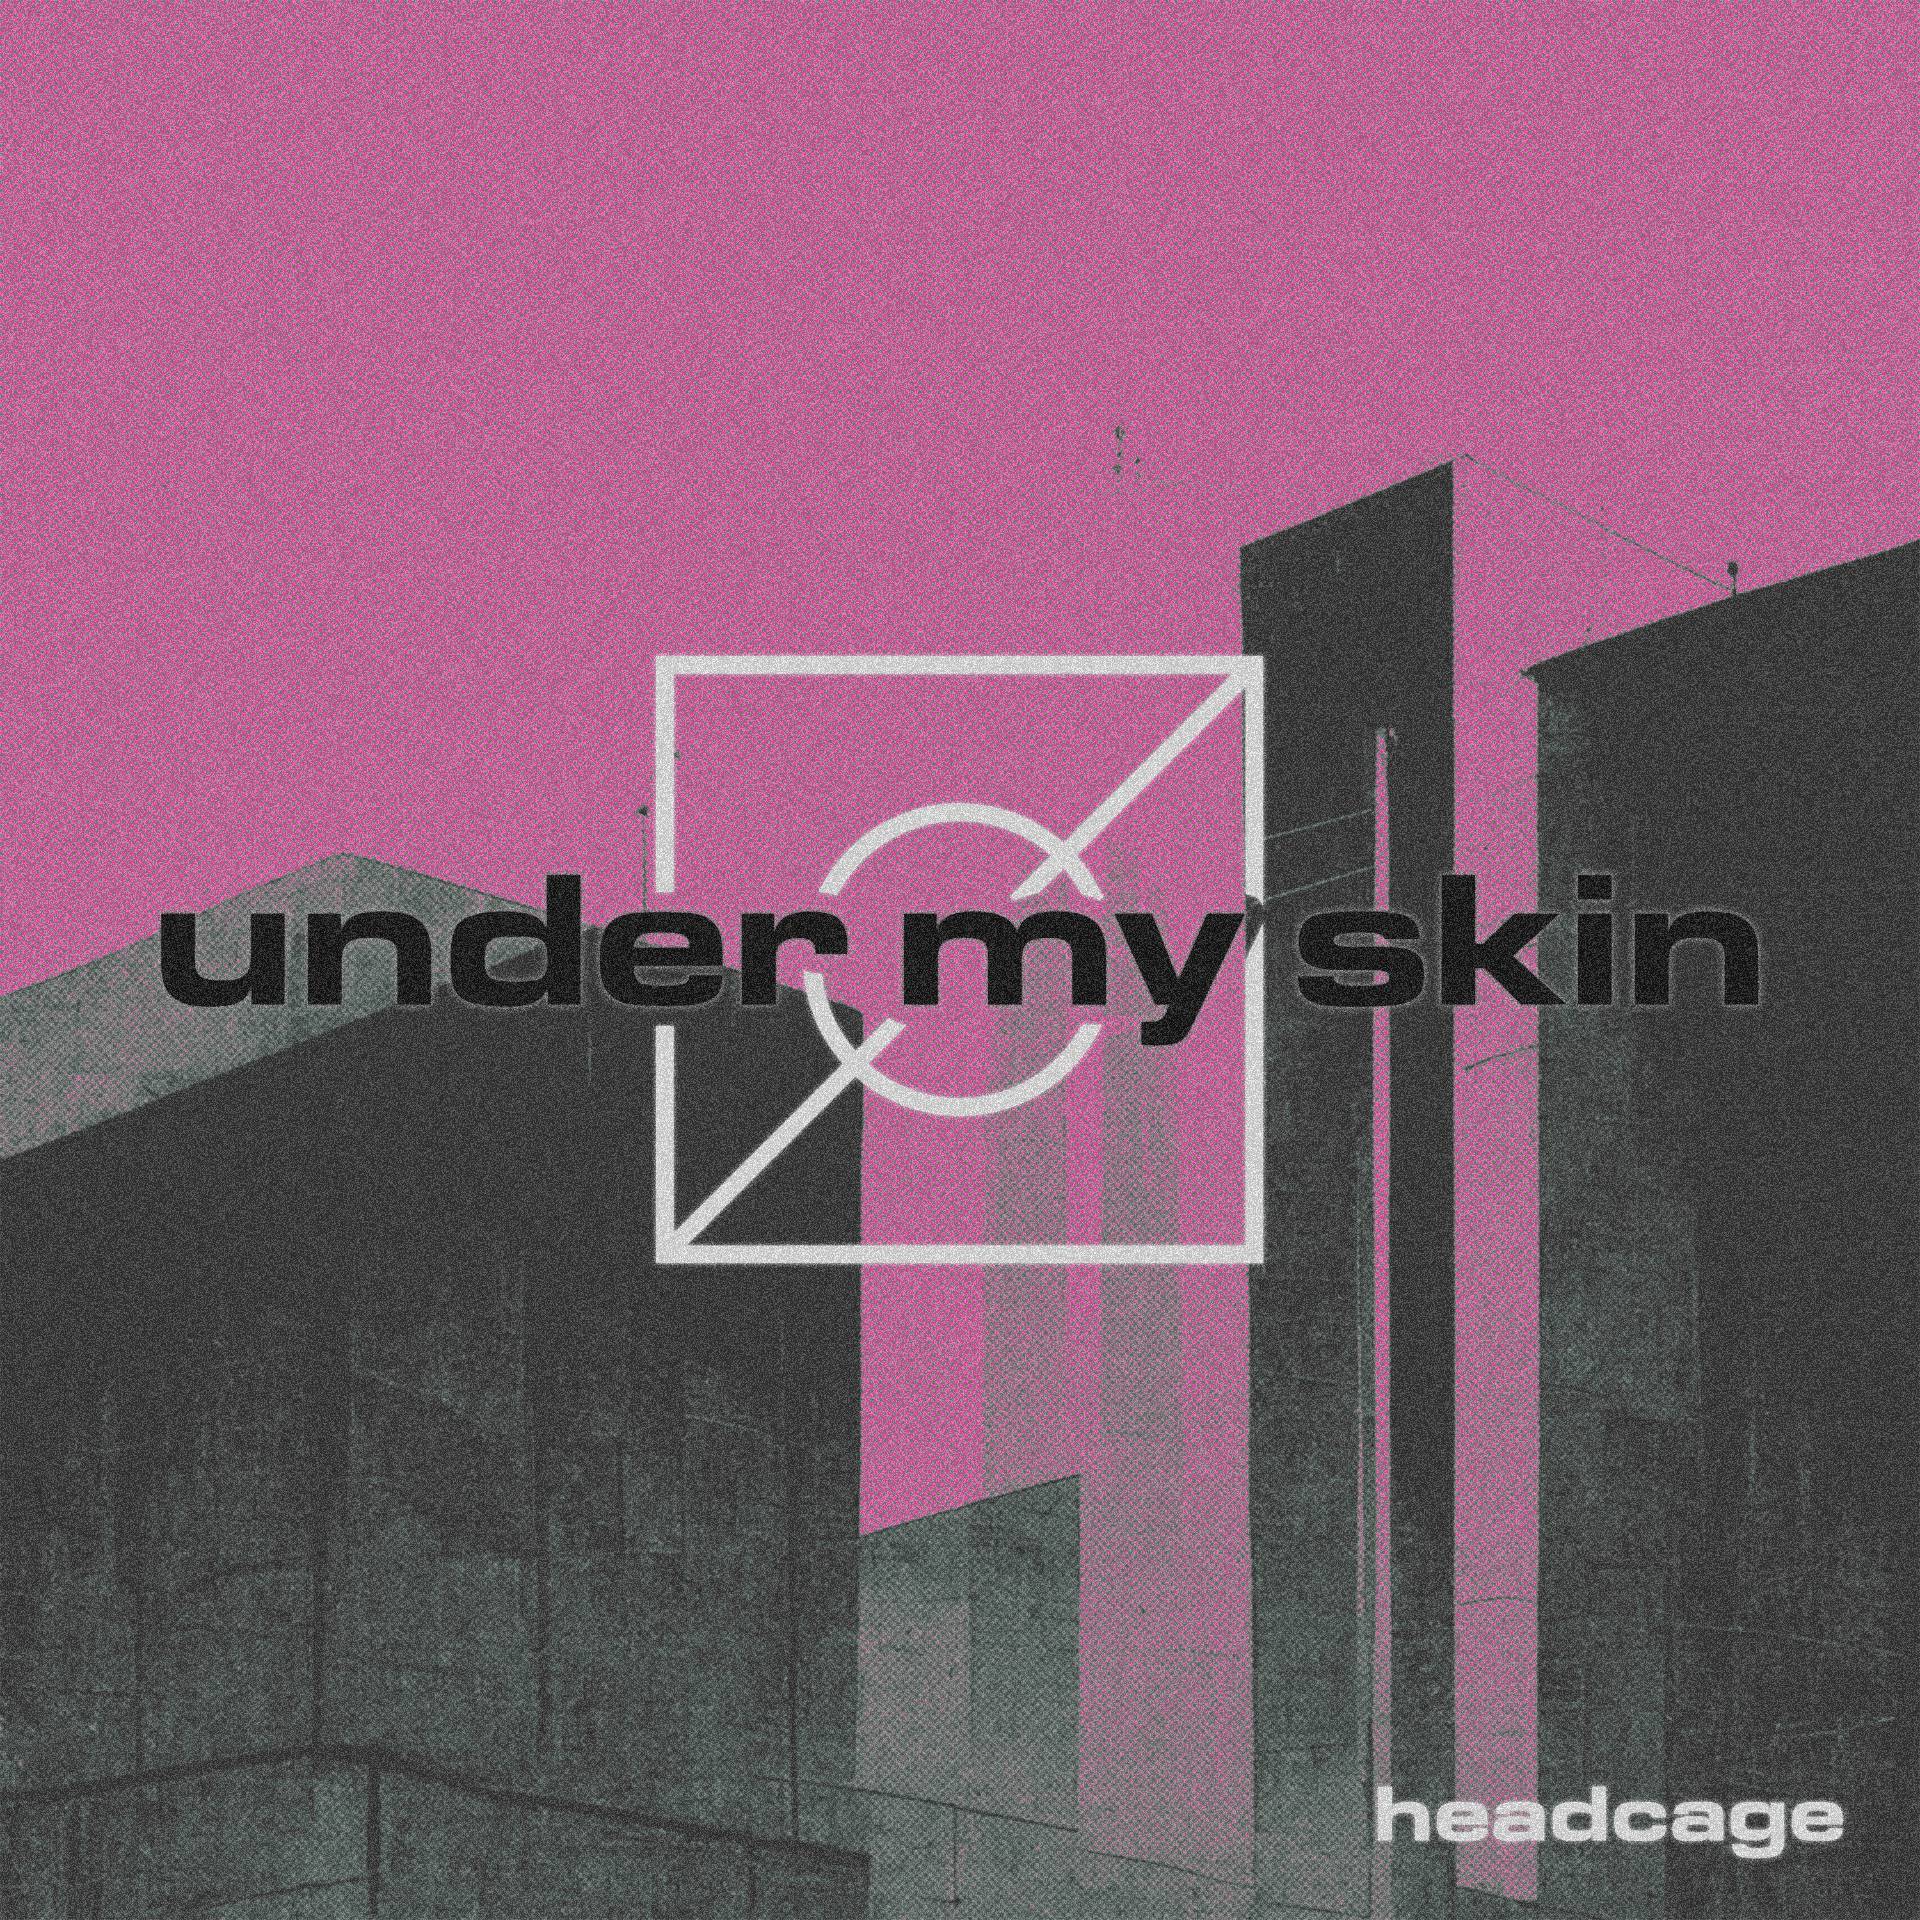 headcage ‘under my skin’ EP album artwork